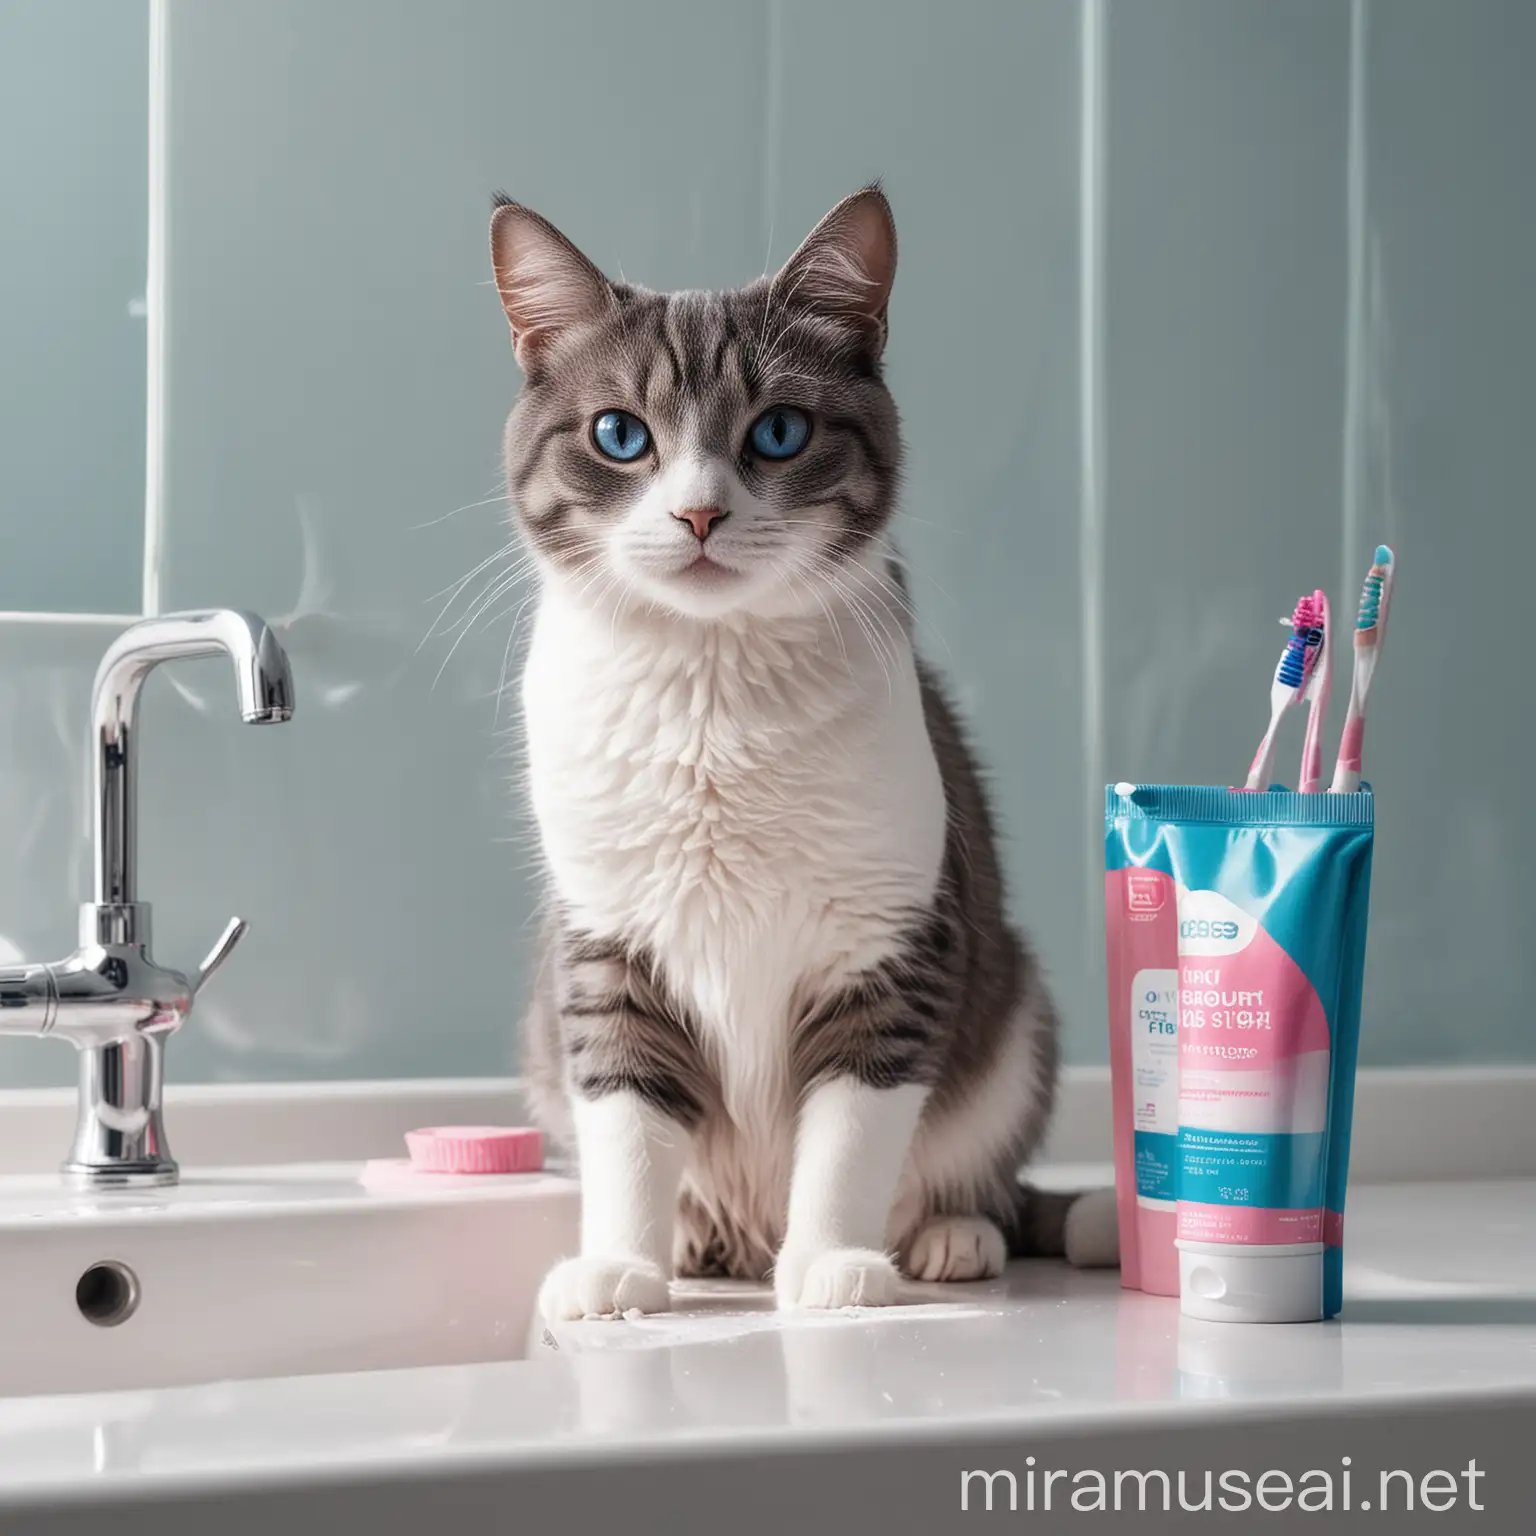 кошка сидит на раковине. Рядом с ней стоит стакан с зубными щетками и зубной пастой. Яркие синие и розовые тона